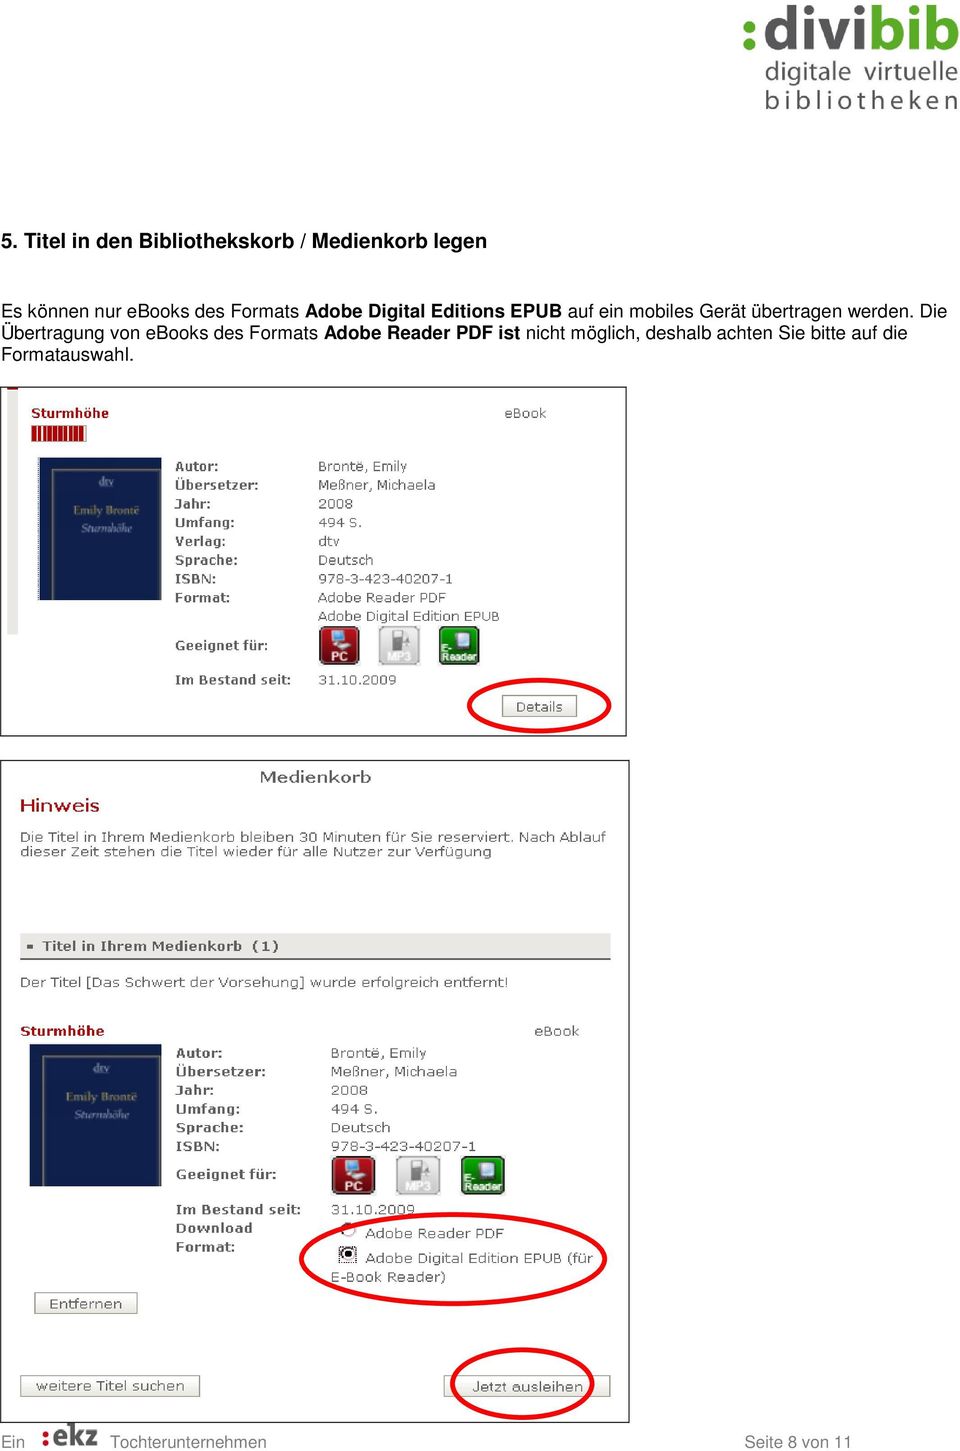 Die Übertragung von ebooks des Formats Adobe Reader PDF ist nicht möglich,